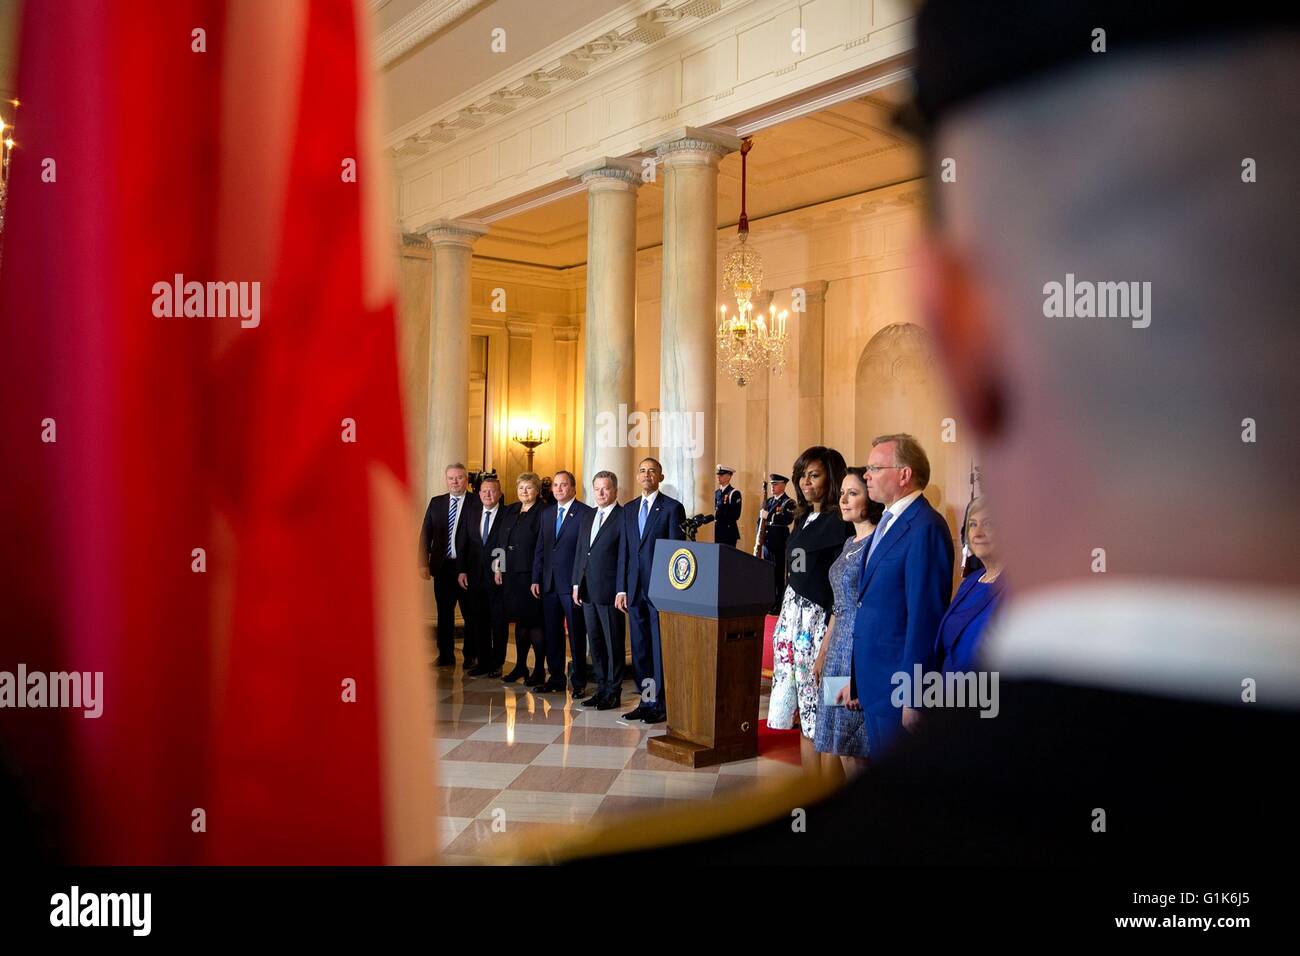 Président américain Barack Obama et les dirigeants des pays nordiques voir la présentation de couleurs dans le Grand Foyer au cours de la cérémonie d'arrivée à la Maison Blanche le 13 mai 2016 à Washington, DC. Banque D'Images